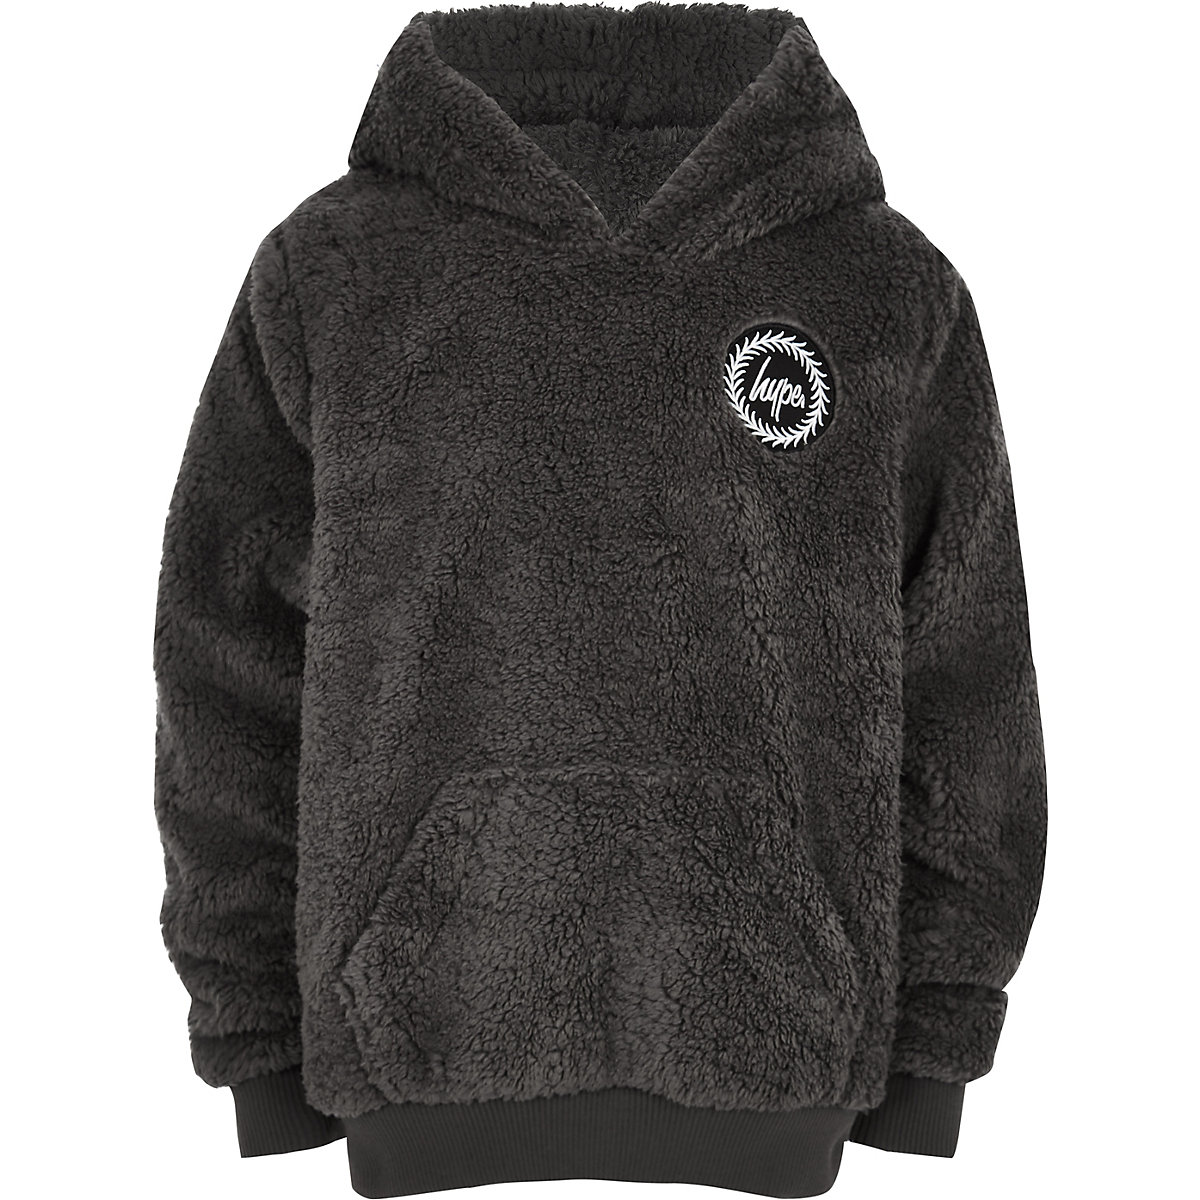 Hype boys grey faux fur hoodie - Hoodies & Sweatshirts - boys